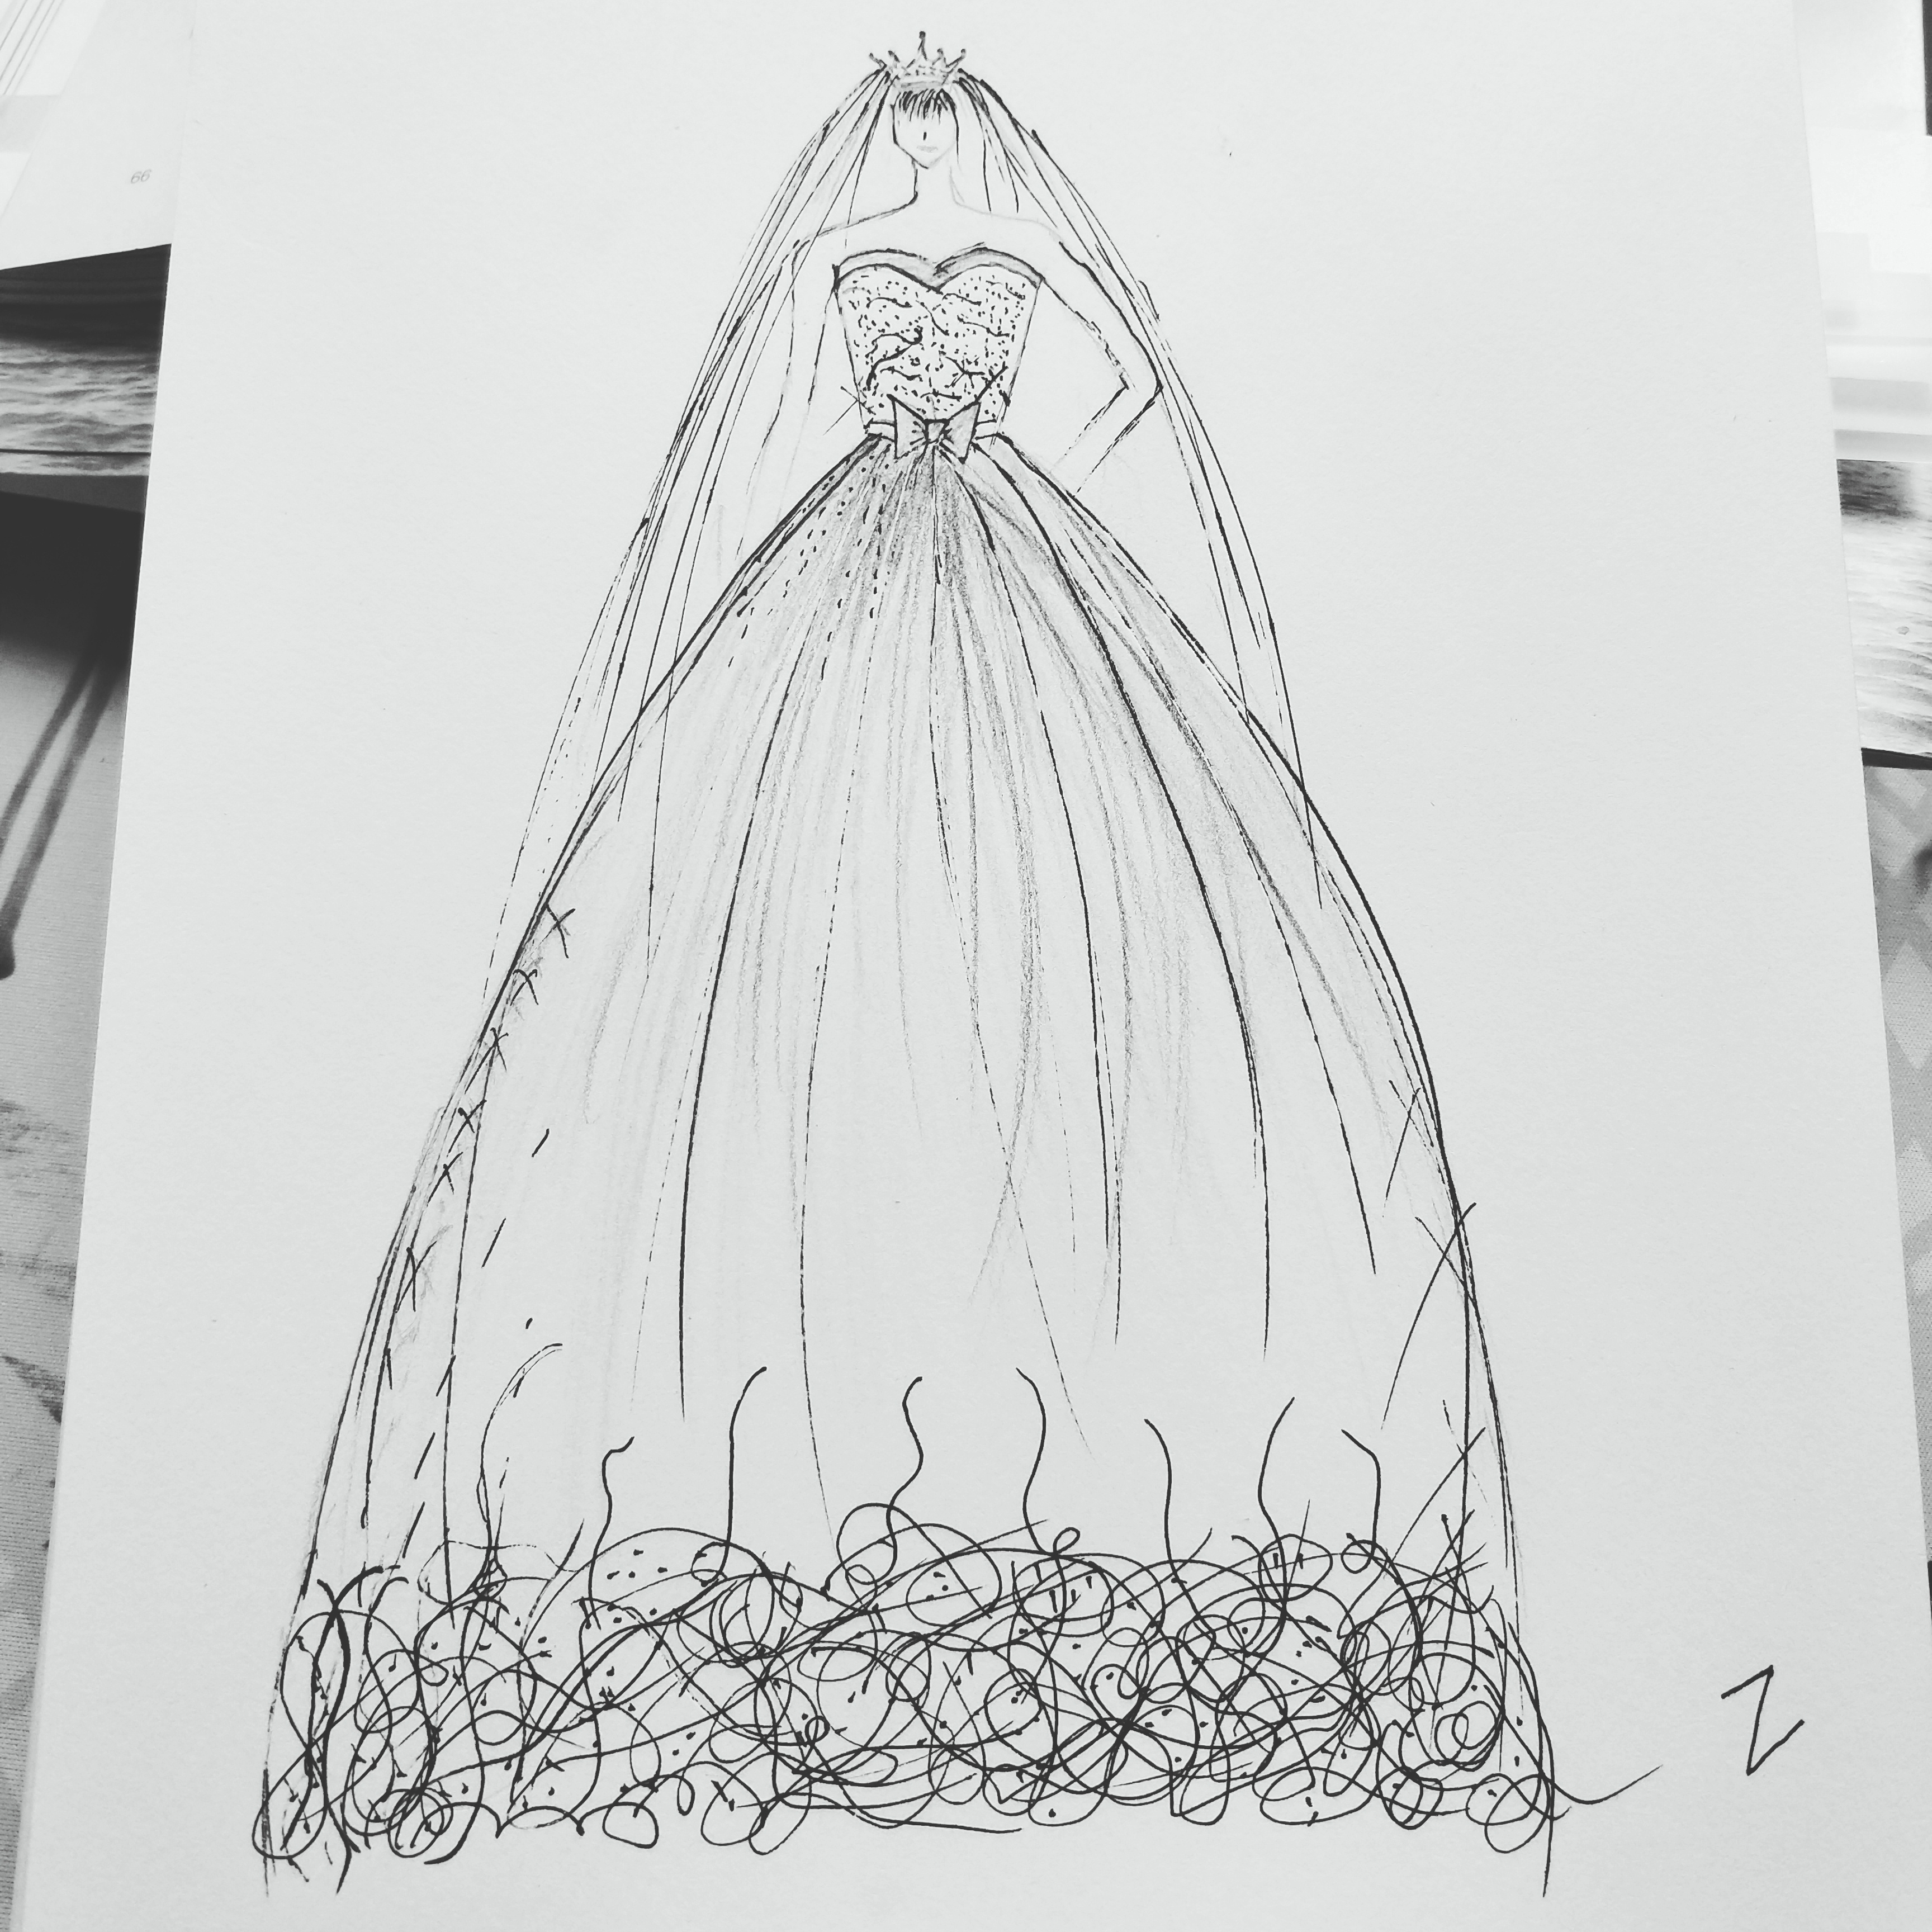 婚纱设计图 铅笔画图片